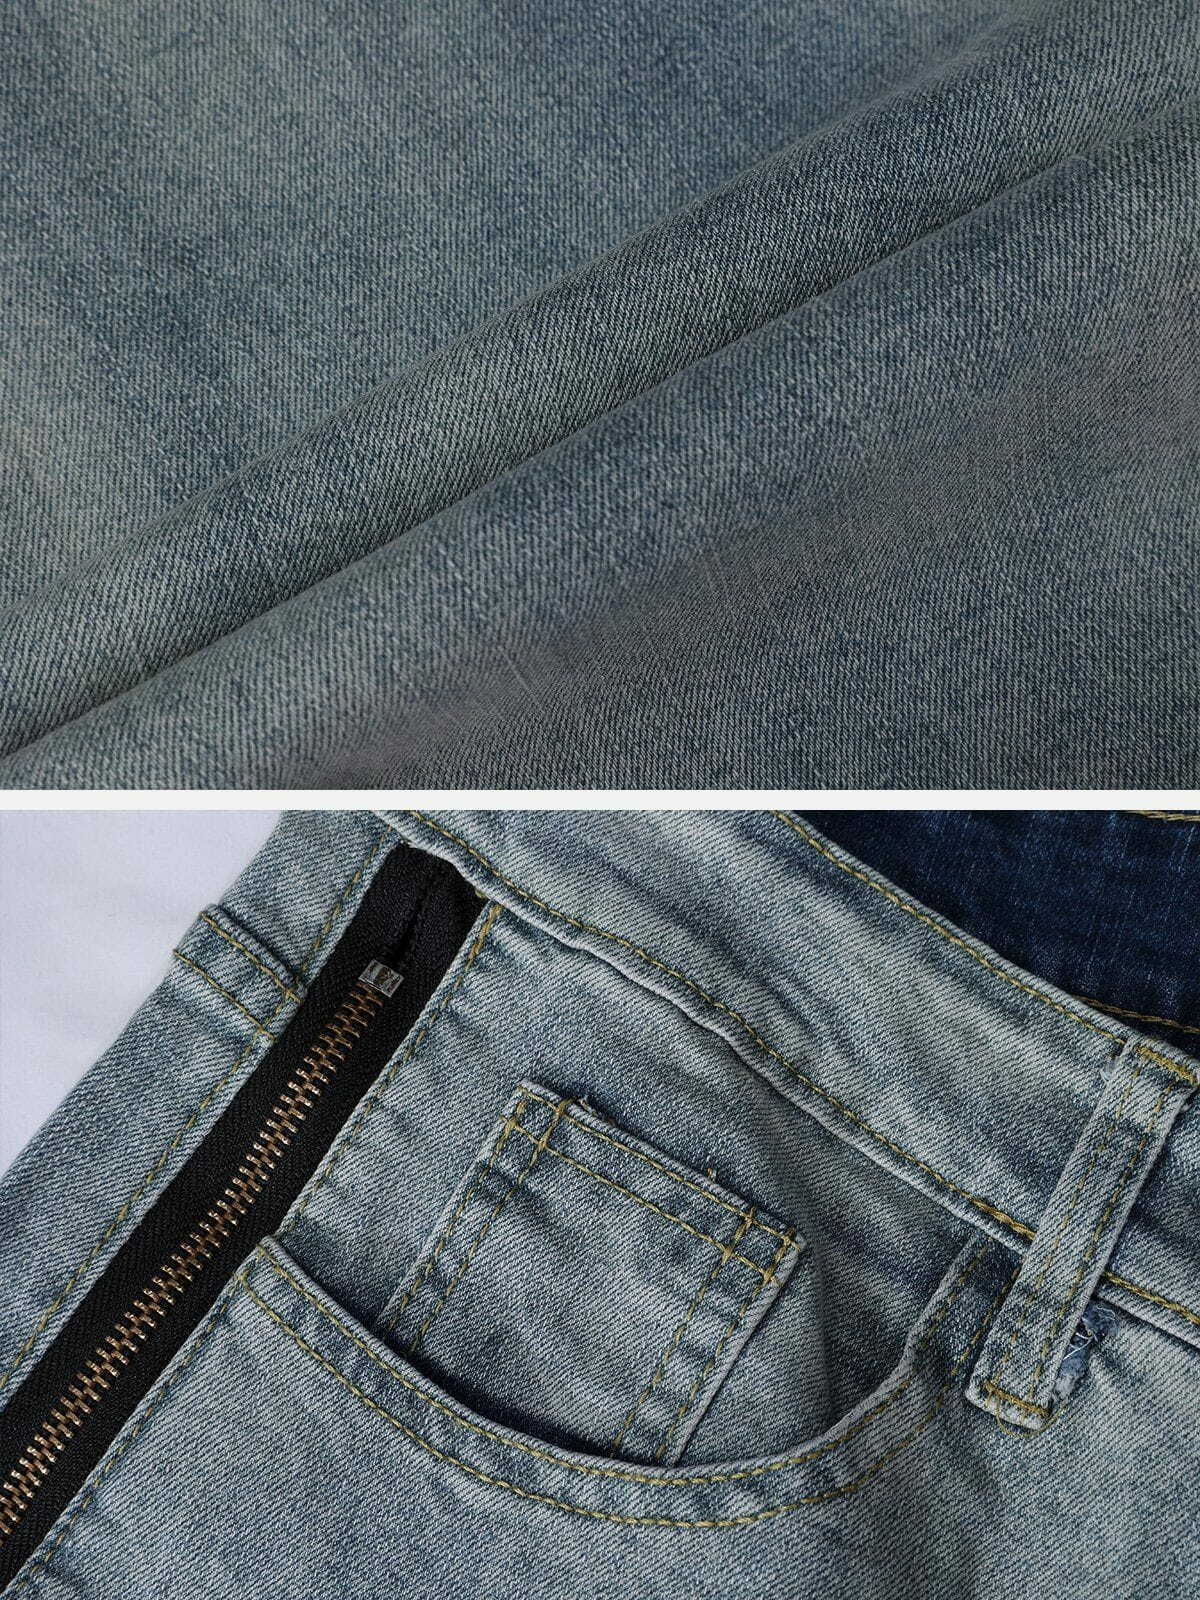 distressed zip jeans edgy & vintage streetwear 2336